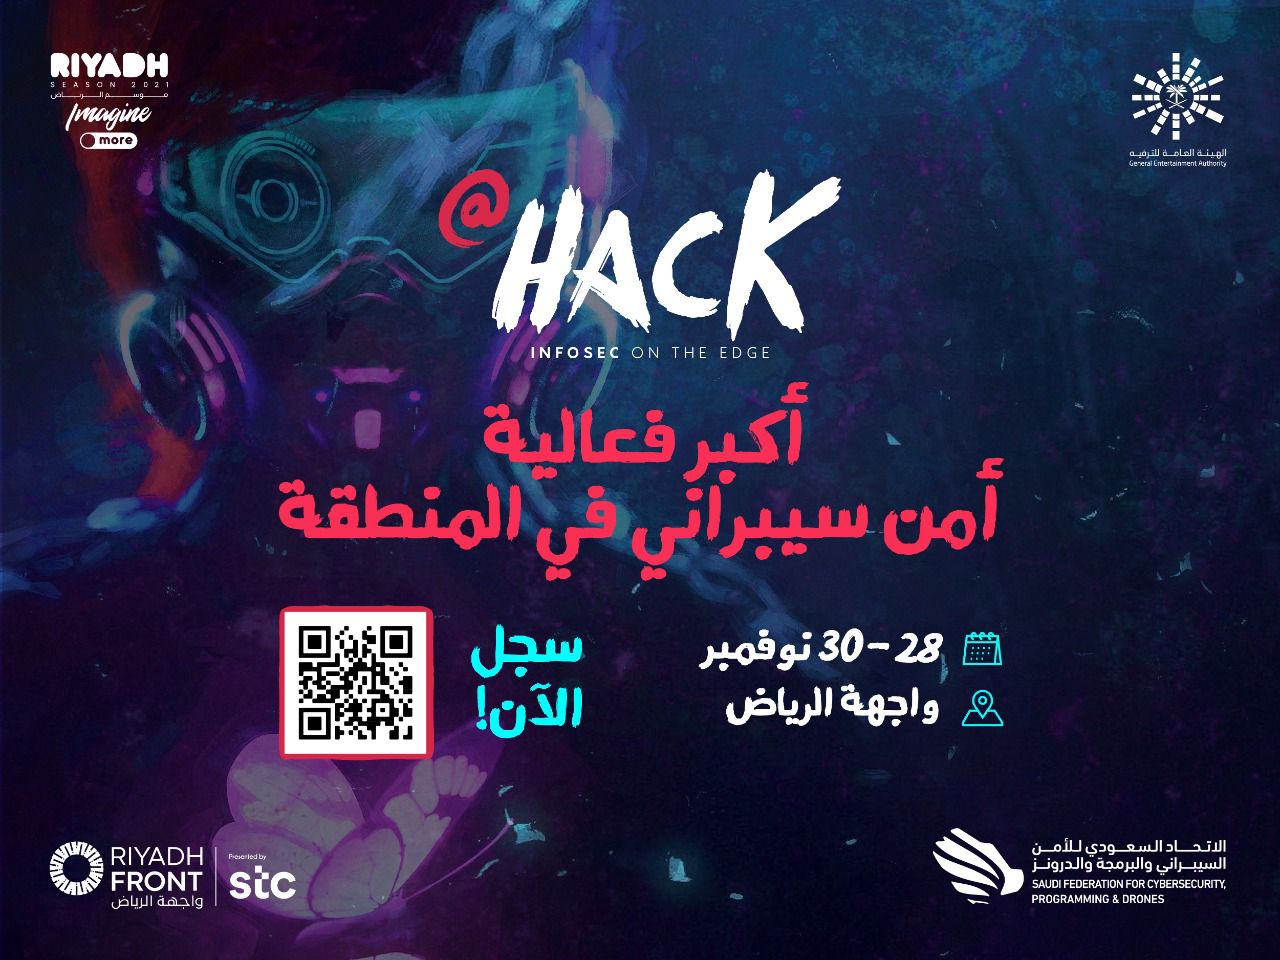 فتح باب التسجيل في Hack أكبر فعالية أمن سيبراني بالمنطقة